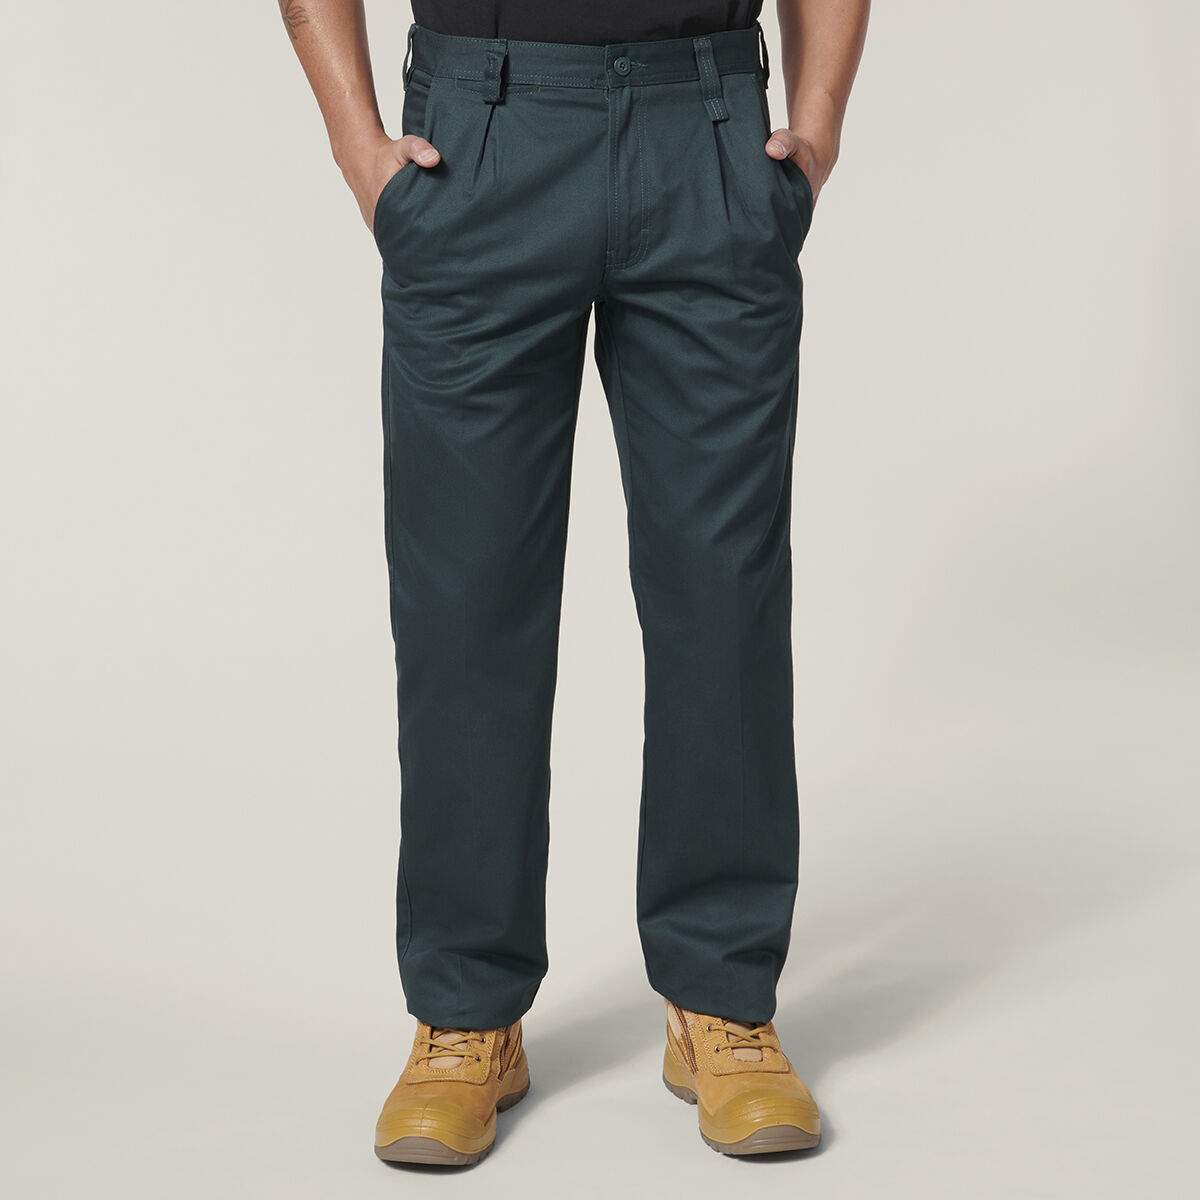 Hard Yakka 3056 Cargo Pant (Y02255) – Budget Workwear New Zealand Store